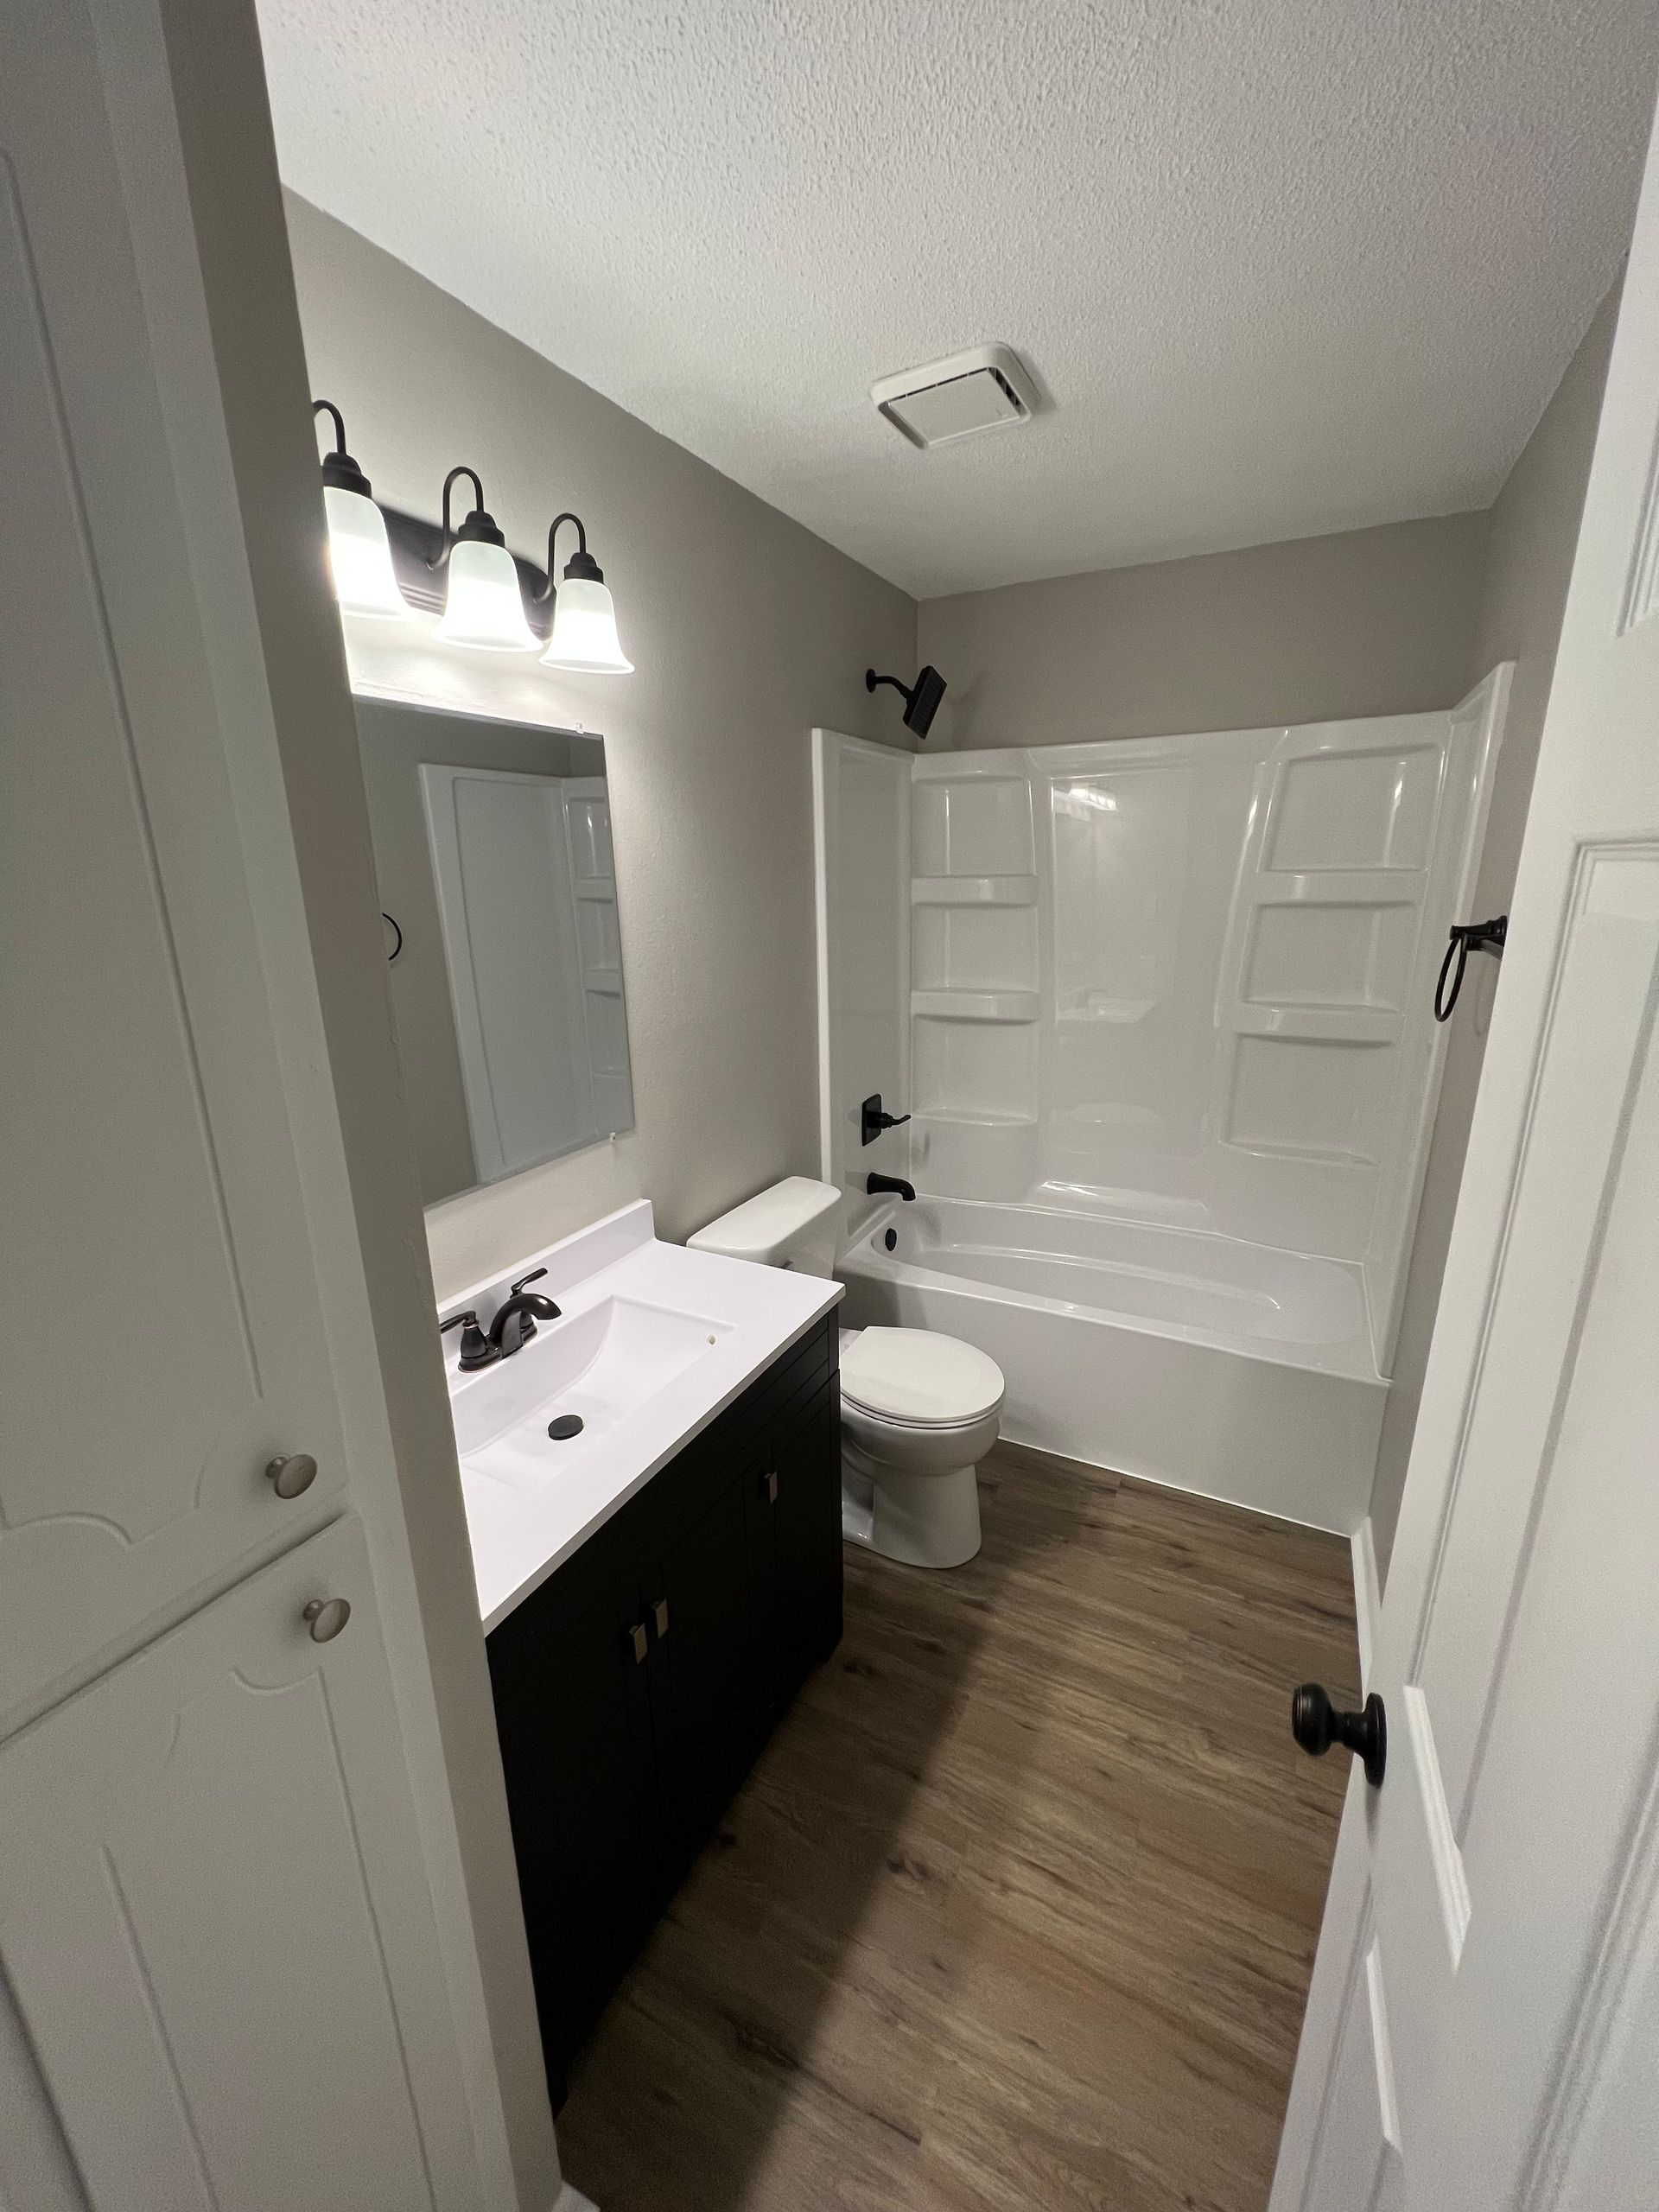 A bathroom with a sink , toilet , bathtub and mirror.